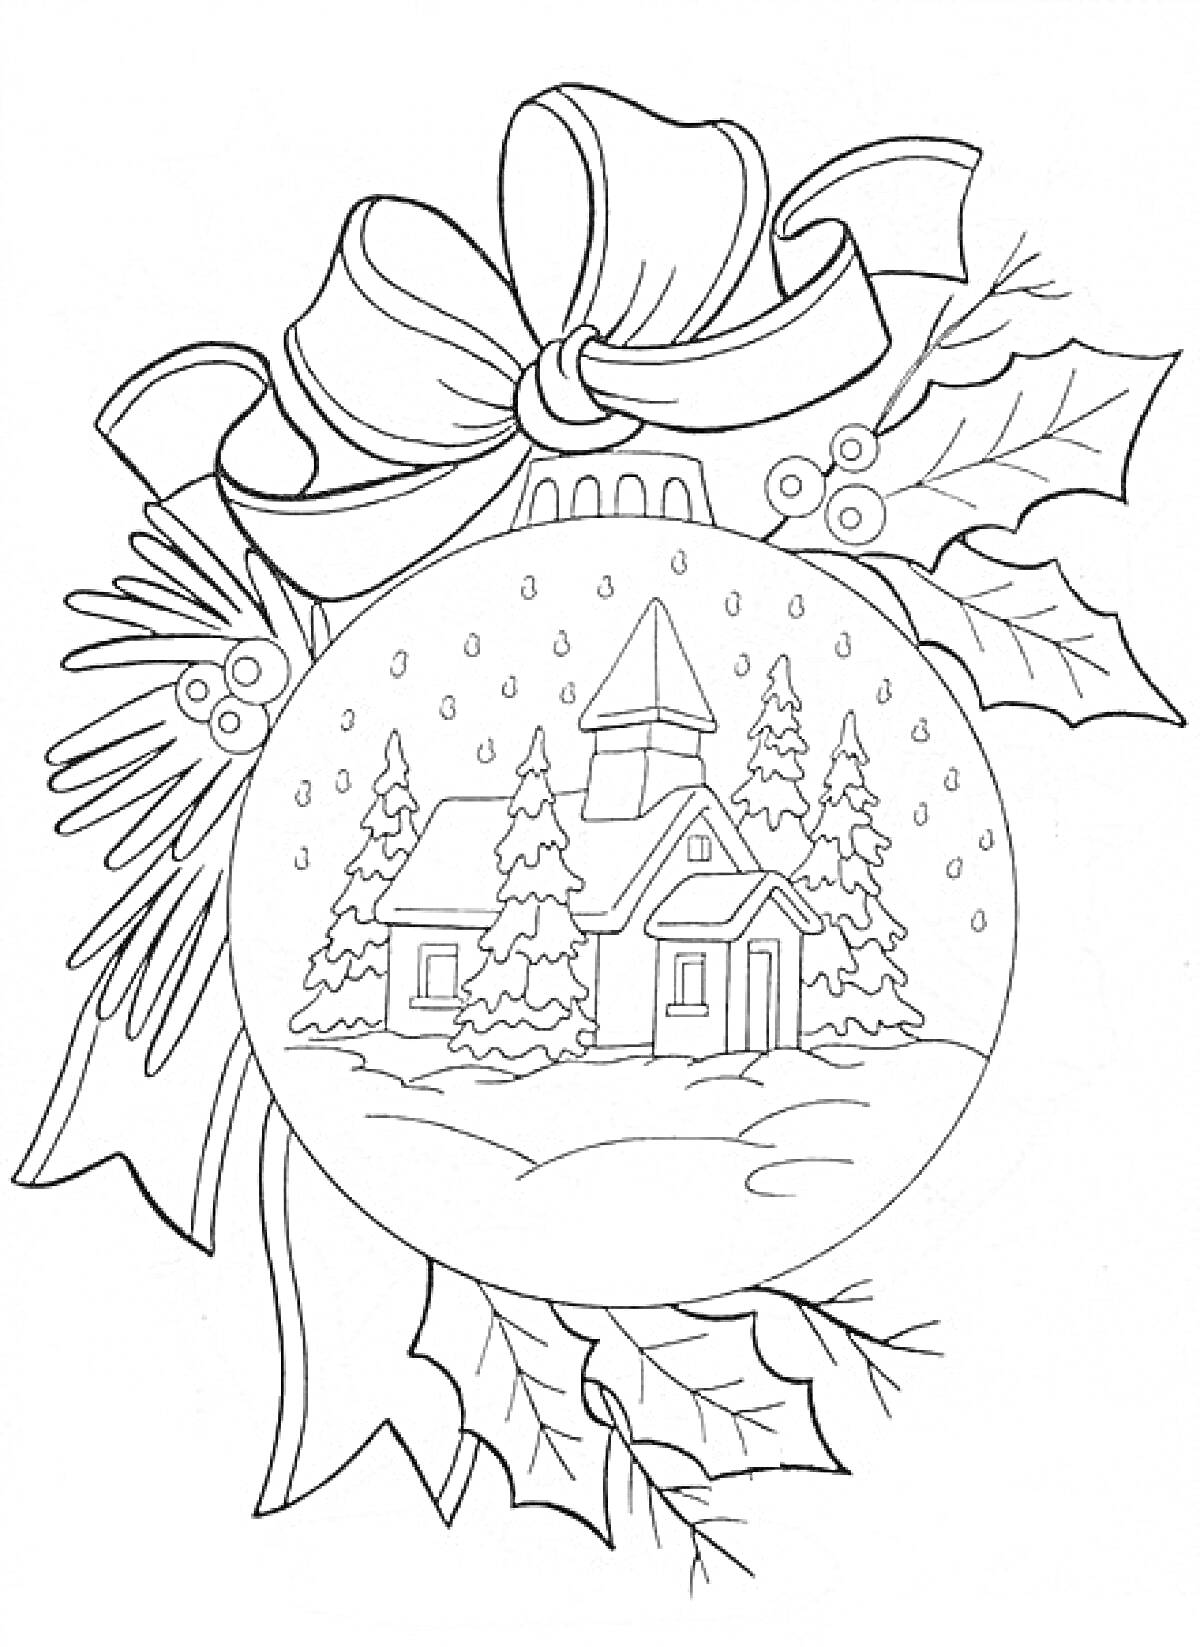 Раскраска Рождественский шарик с домиком, ёлками, снегом, еловыми ветками, лентой и листьями